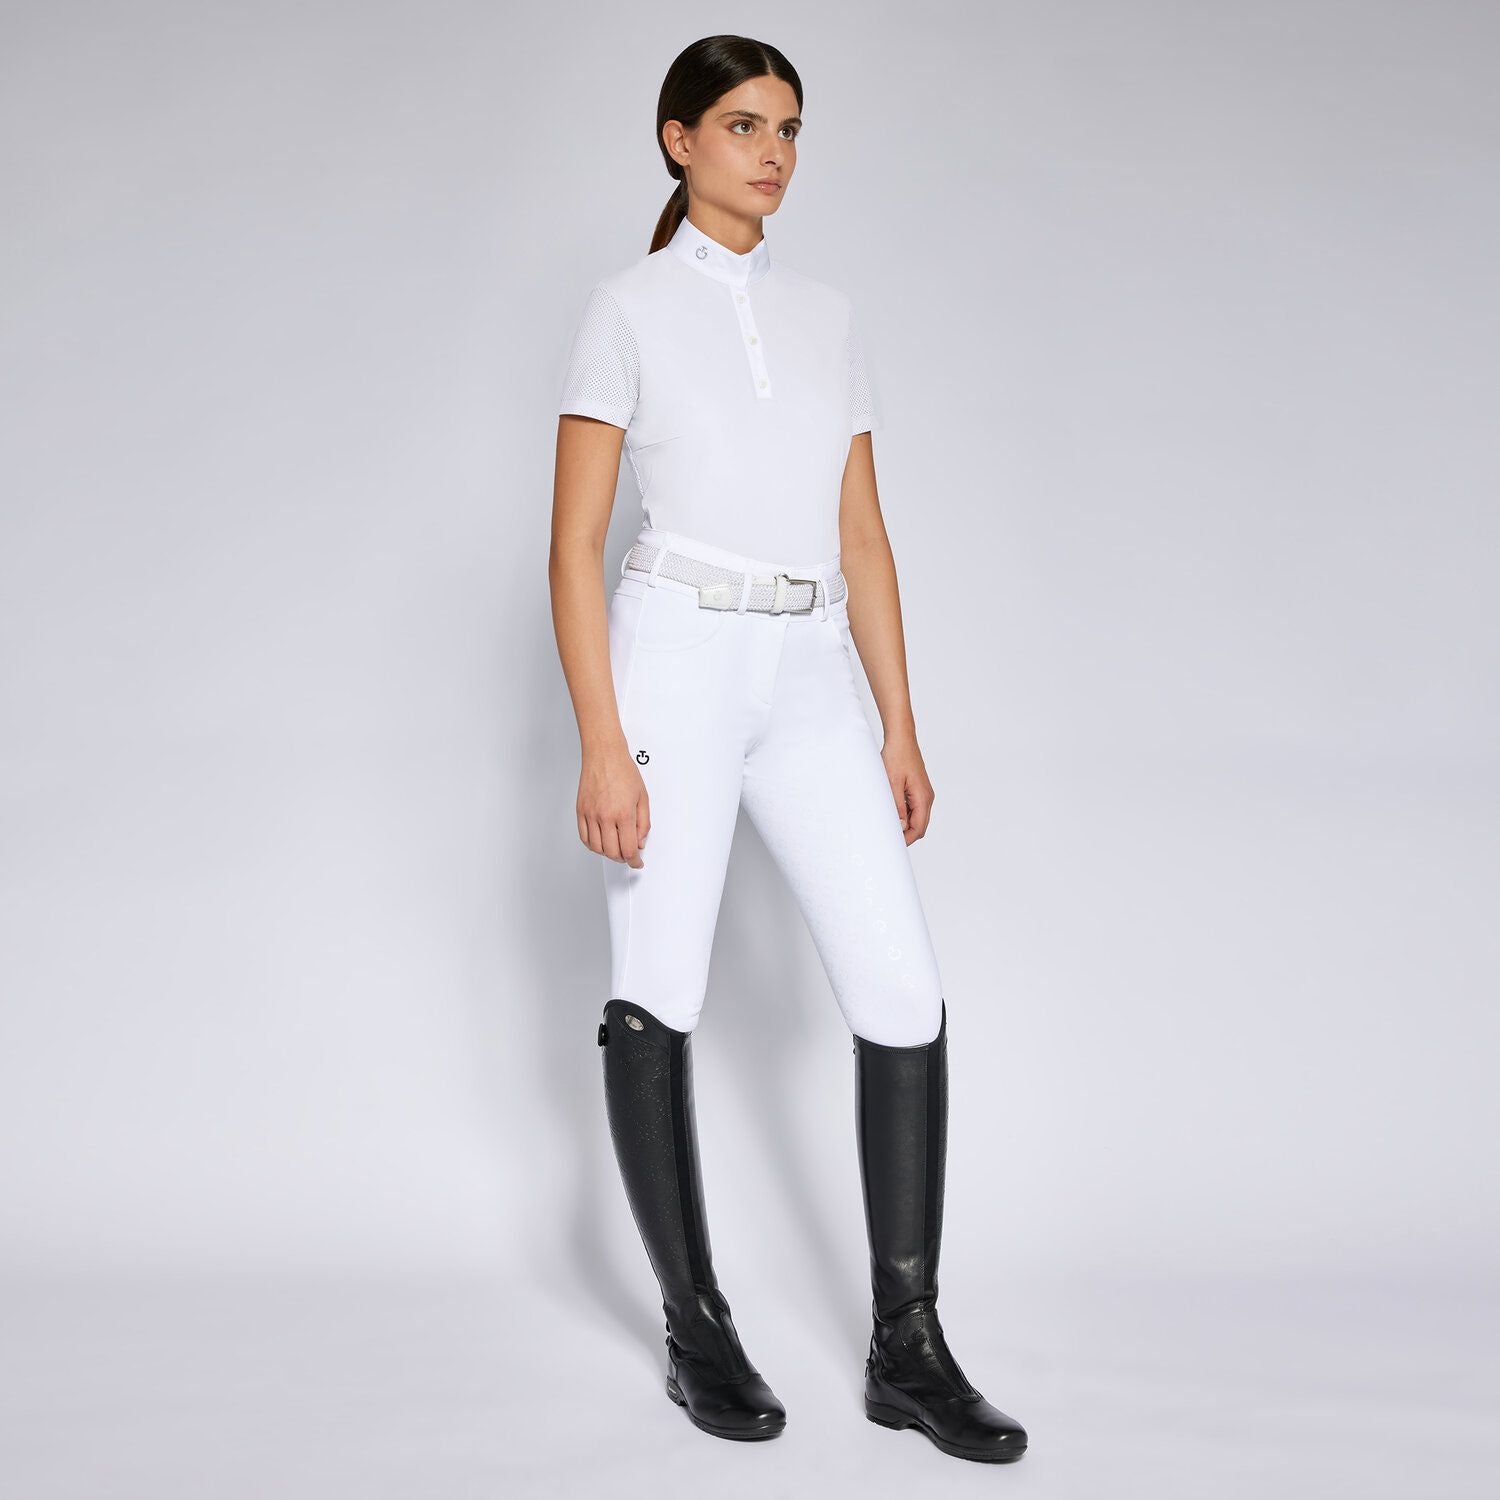 In strahlendem Weiß gehalten, trägt das Cavalleria Toscana WOMEN'S COMPETITION POLO SHIRT zur Eleganz und Leistungsstärke jeder Reiterin bei. Mit diesem Shirt kannst du dein Bestes geben und gleichzeitig stilvoll auftreten - ein Must-Have für jeden ambitionierten Reitsportler!